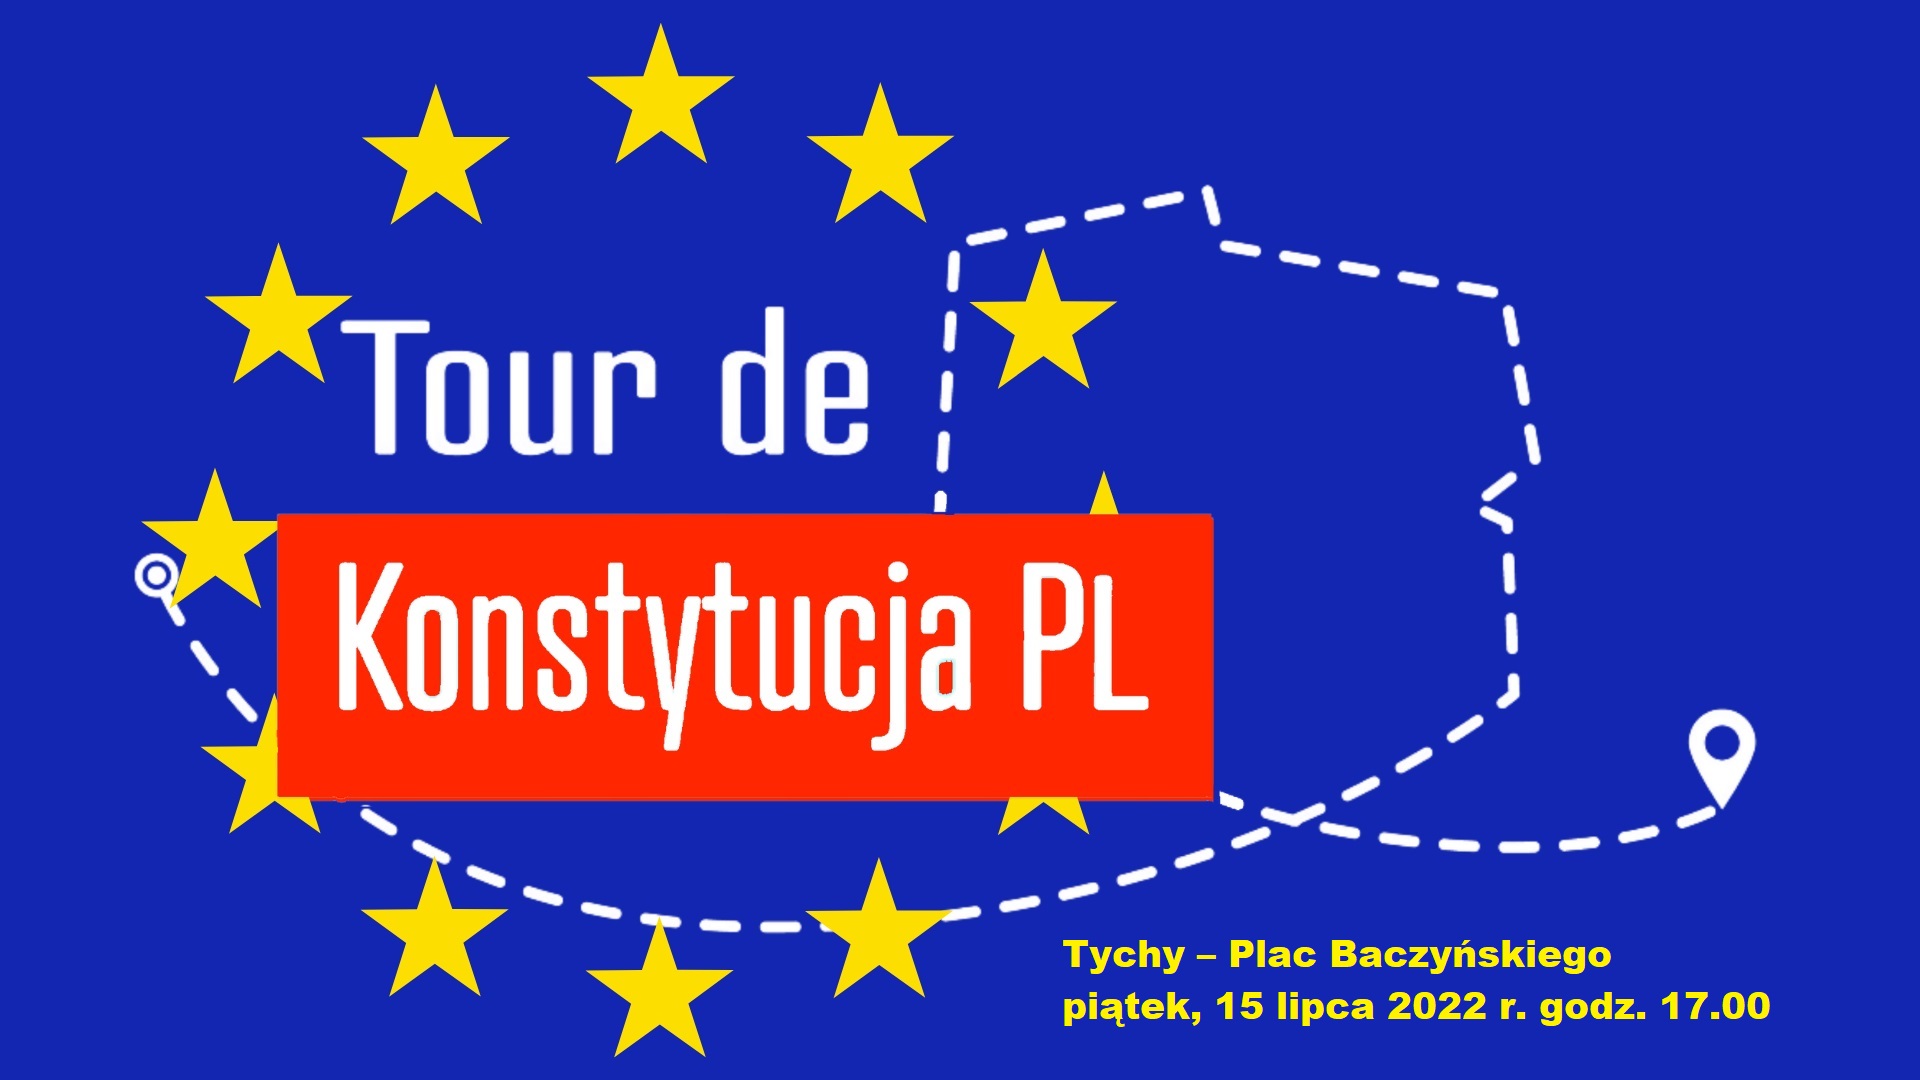 Tour de Konstytucja PL – Tychy @ Plac Baczyńskiego, Tychy